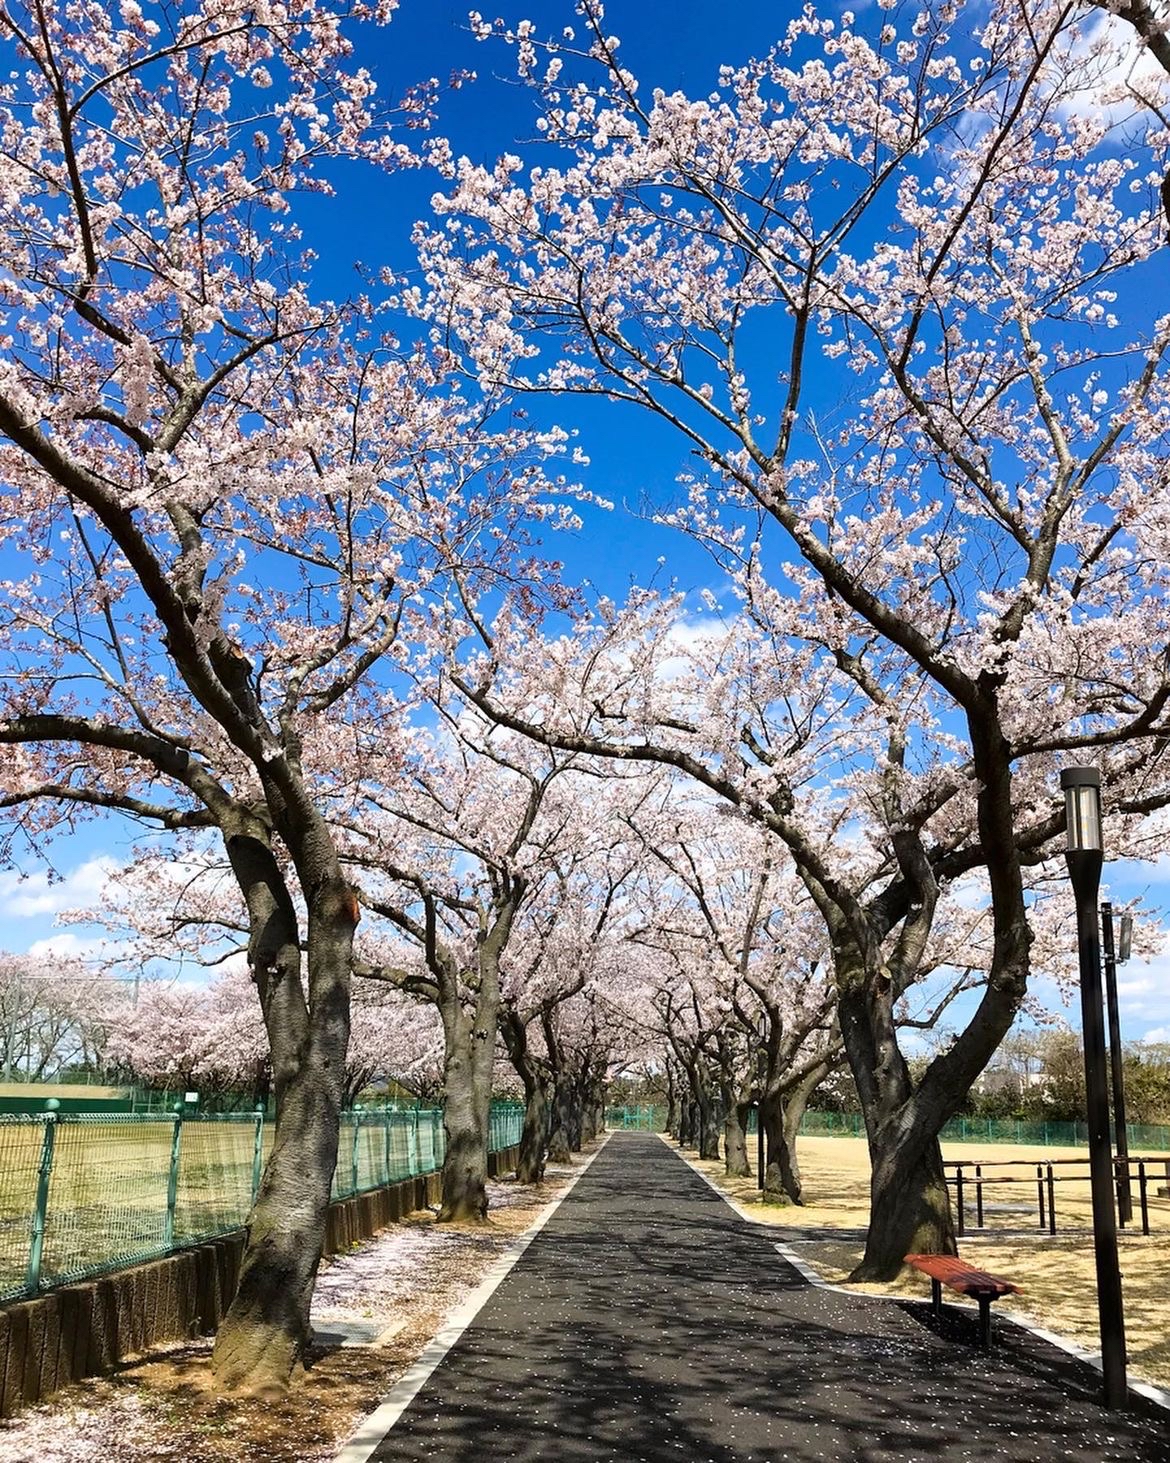 #春日赏花图鉴   阿漕ヶ浦运动公园位于日本茨城县，是一个集体育、休闲和自然美景于一体的综合性公园。